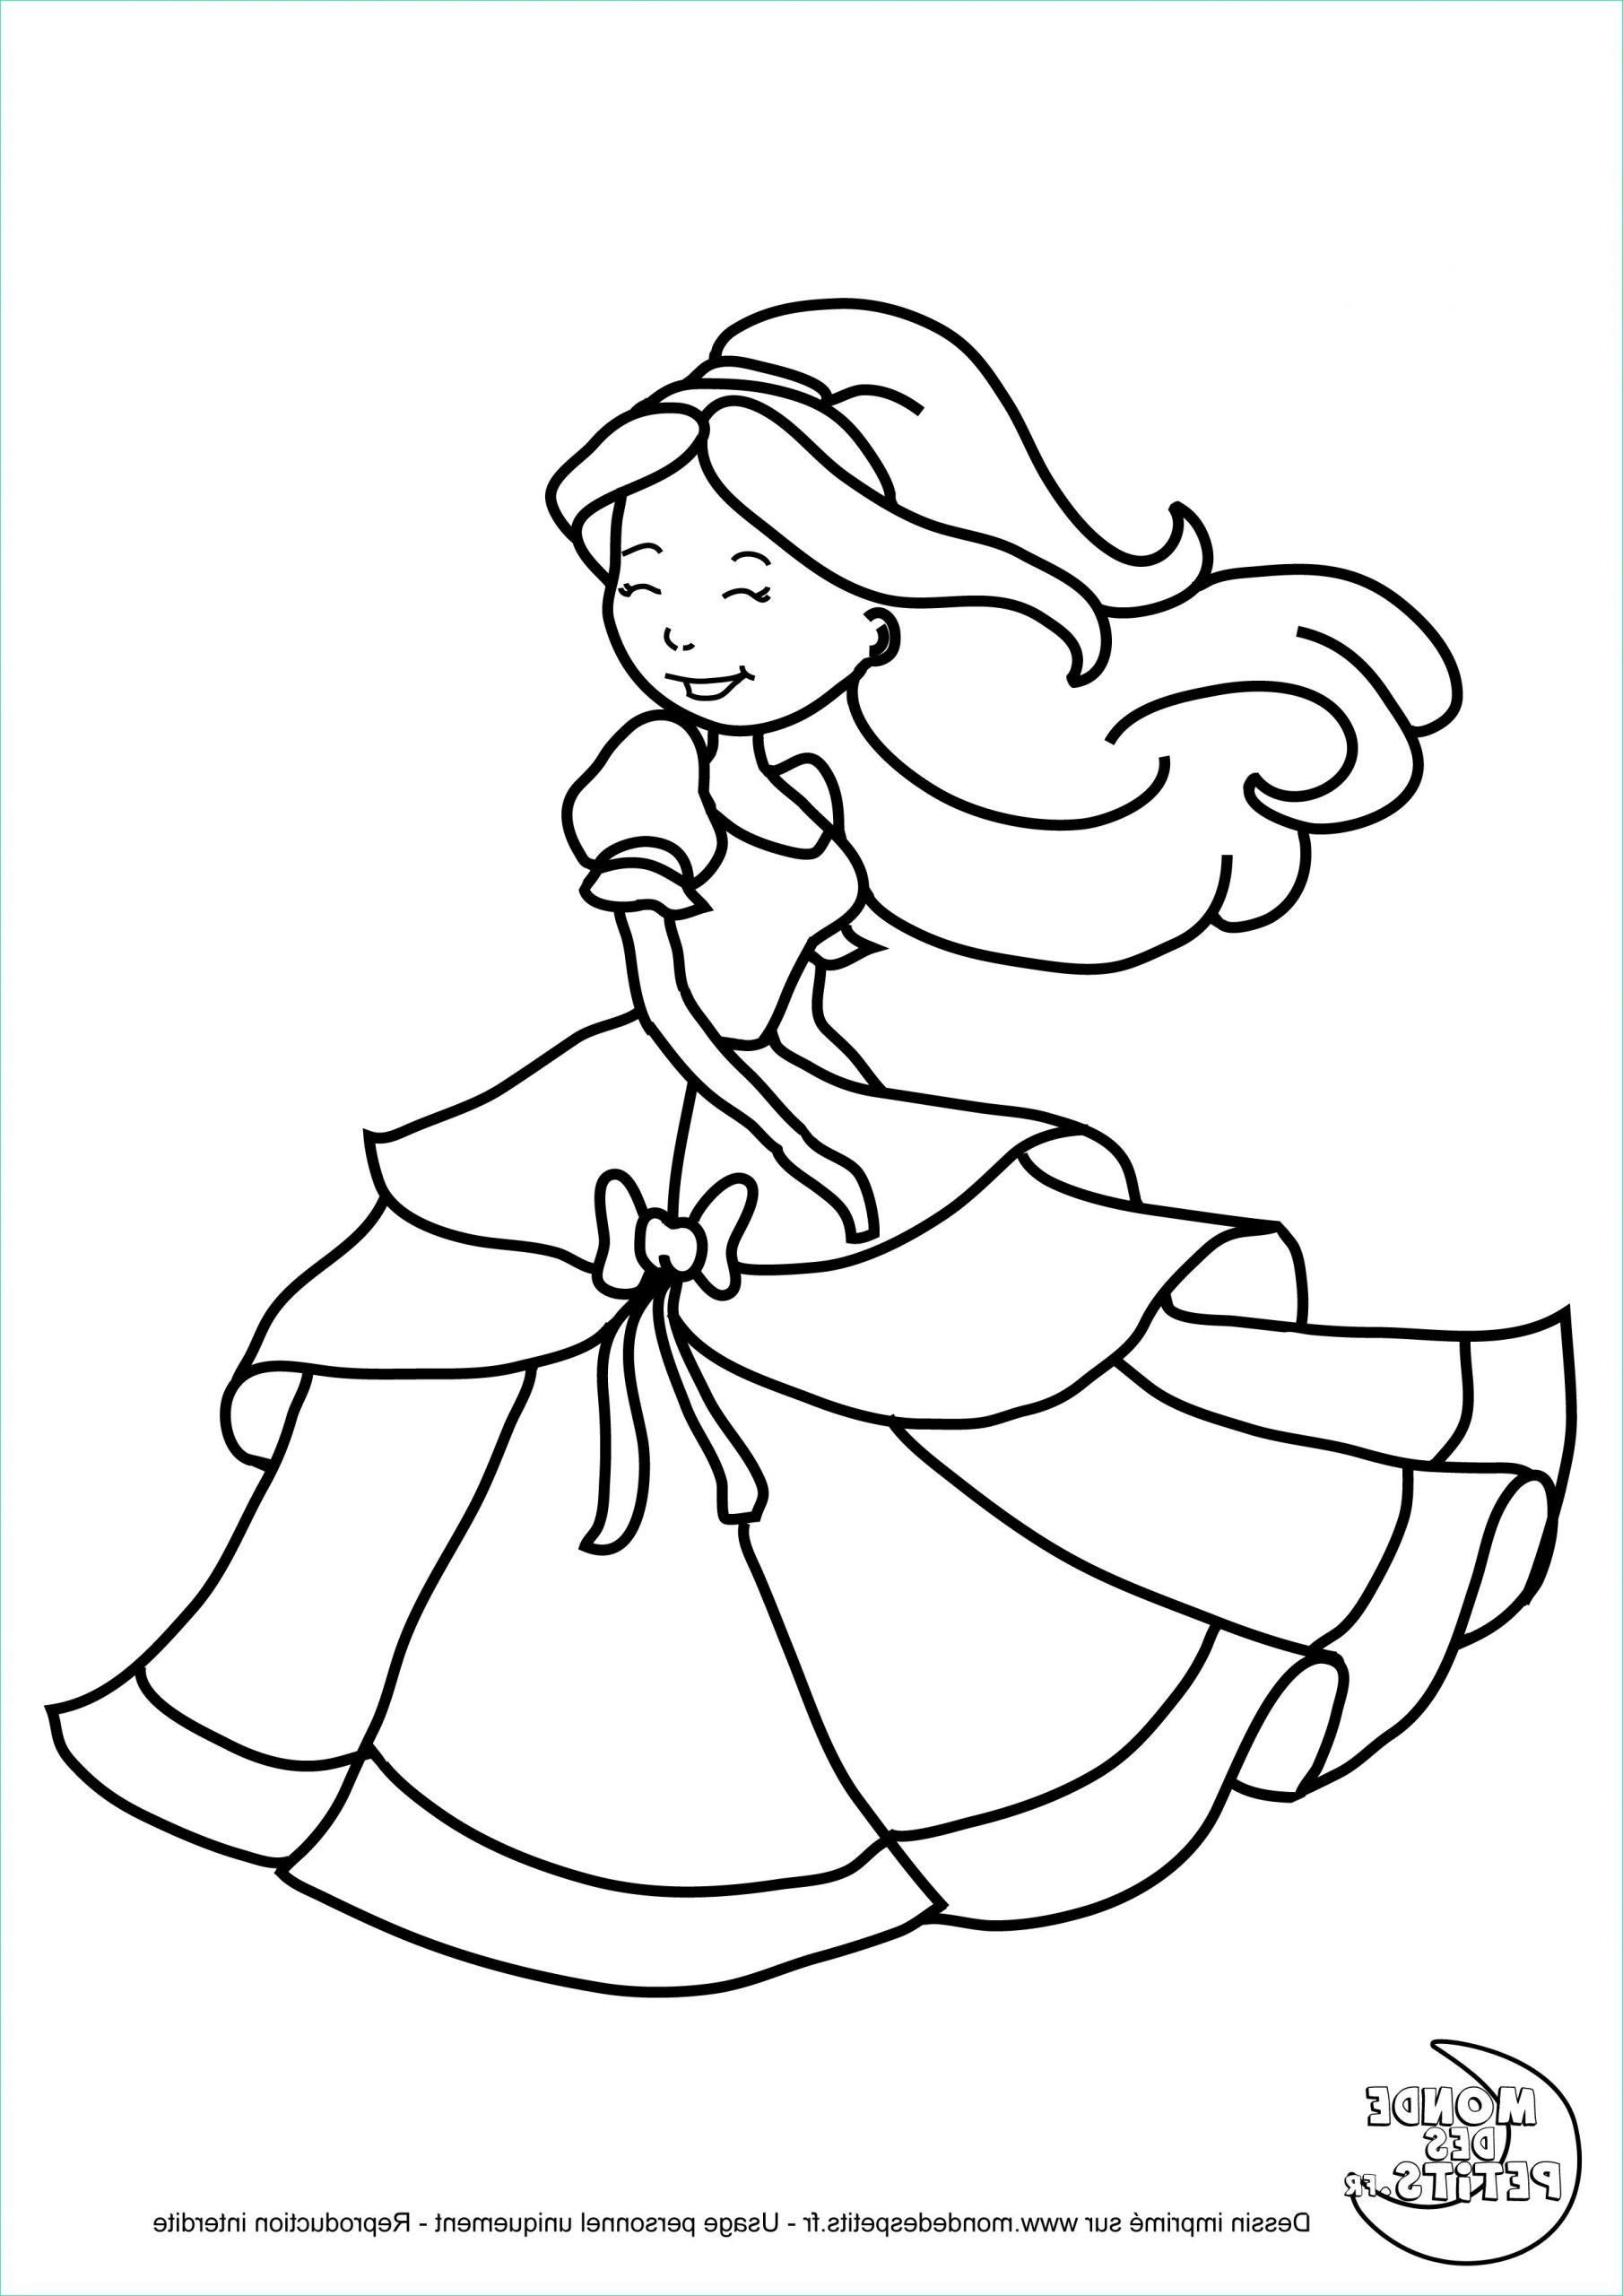 Dessin De Princesse à Imprimer Beau Images 15 Coloriage Robe De Princesse A Imprimer